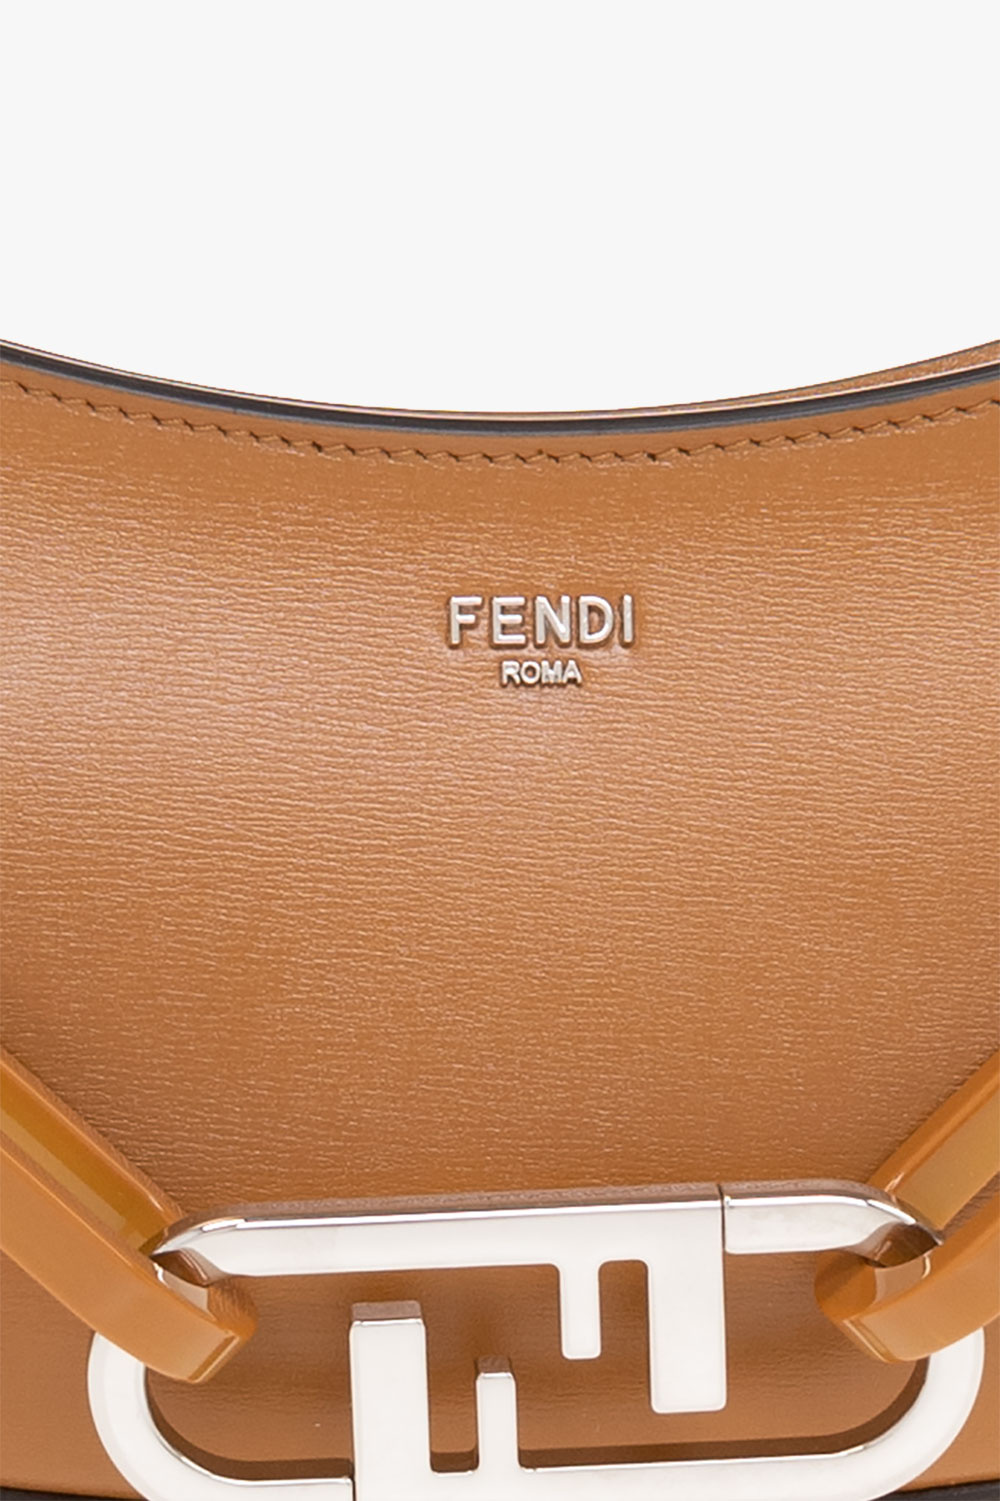 Fendi O'Lock handbag